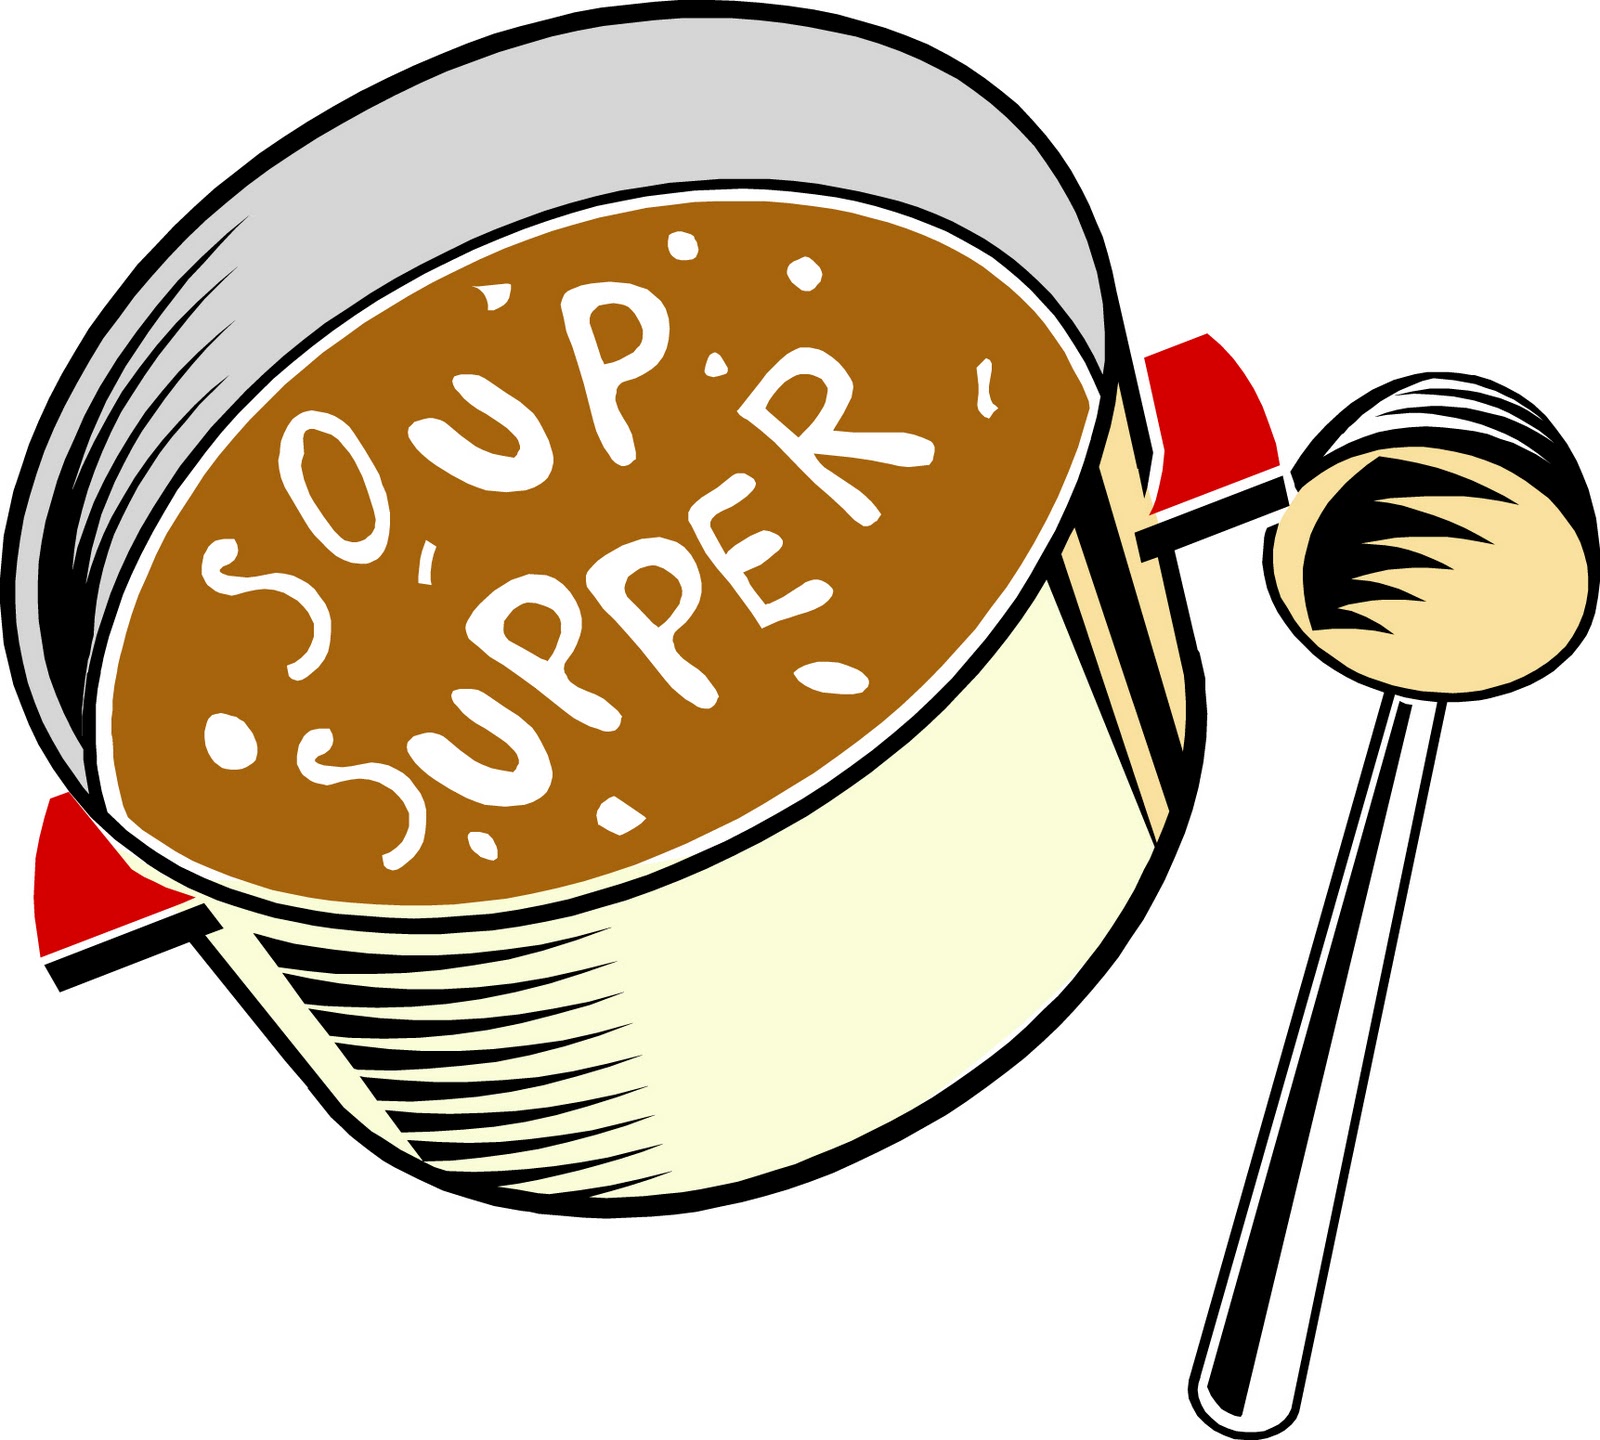 Chili Soup Clip Art Soup Supper On Thursday